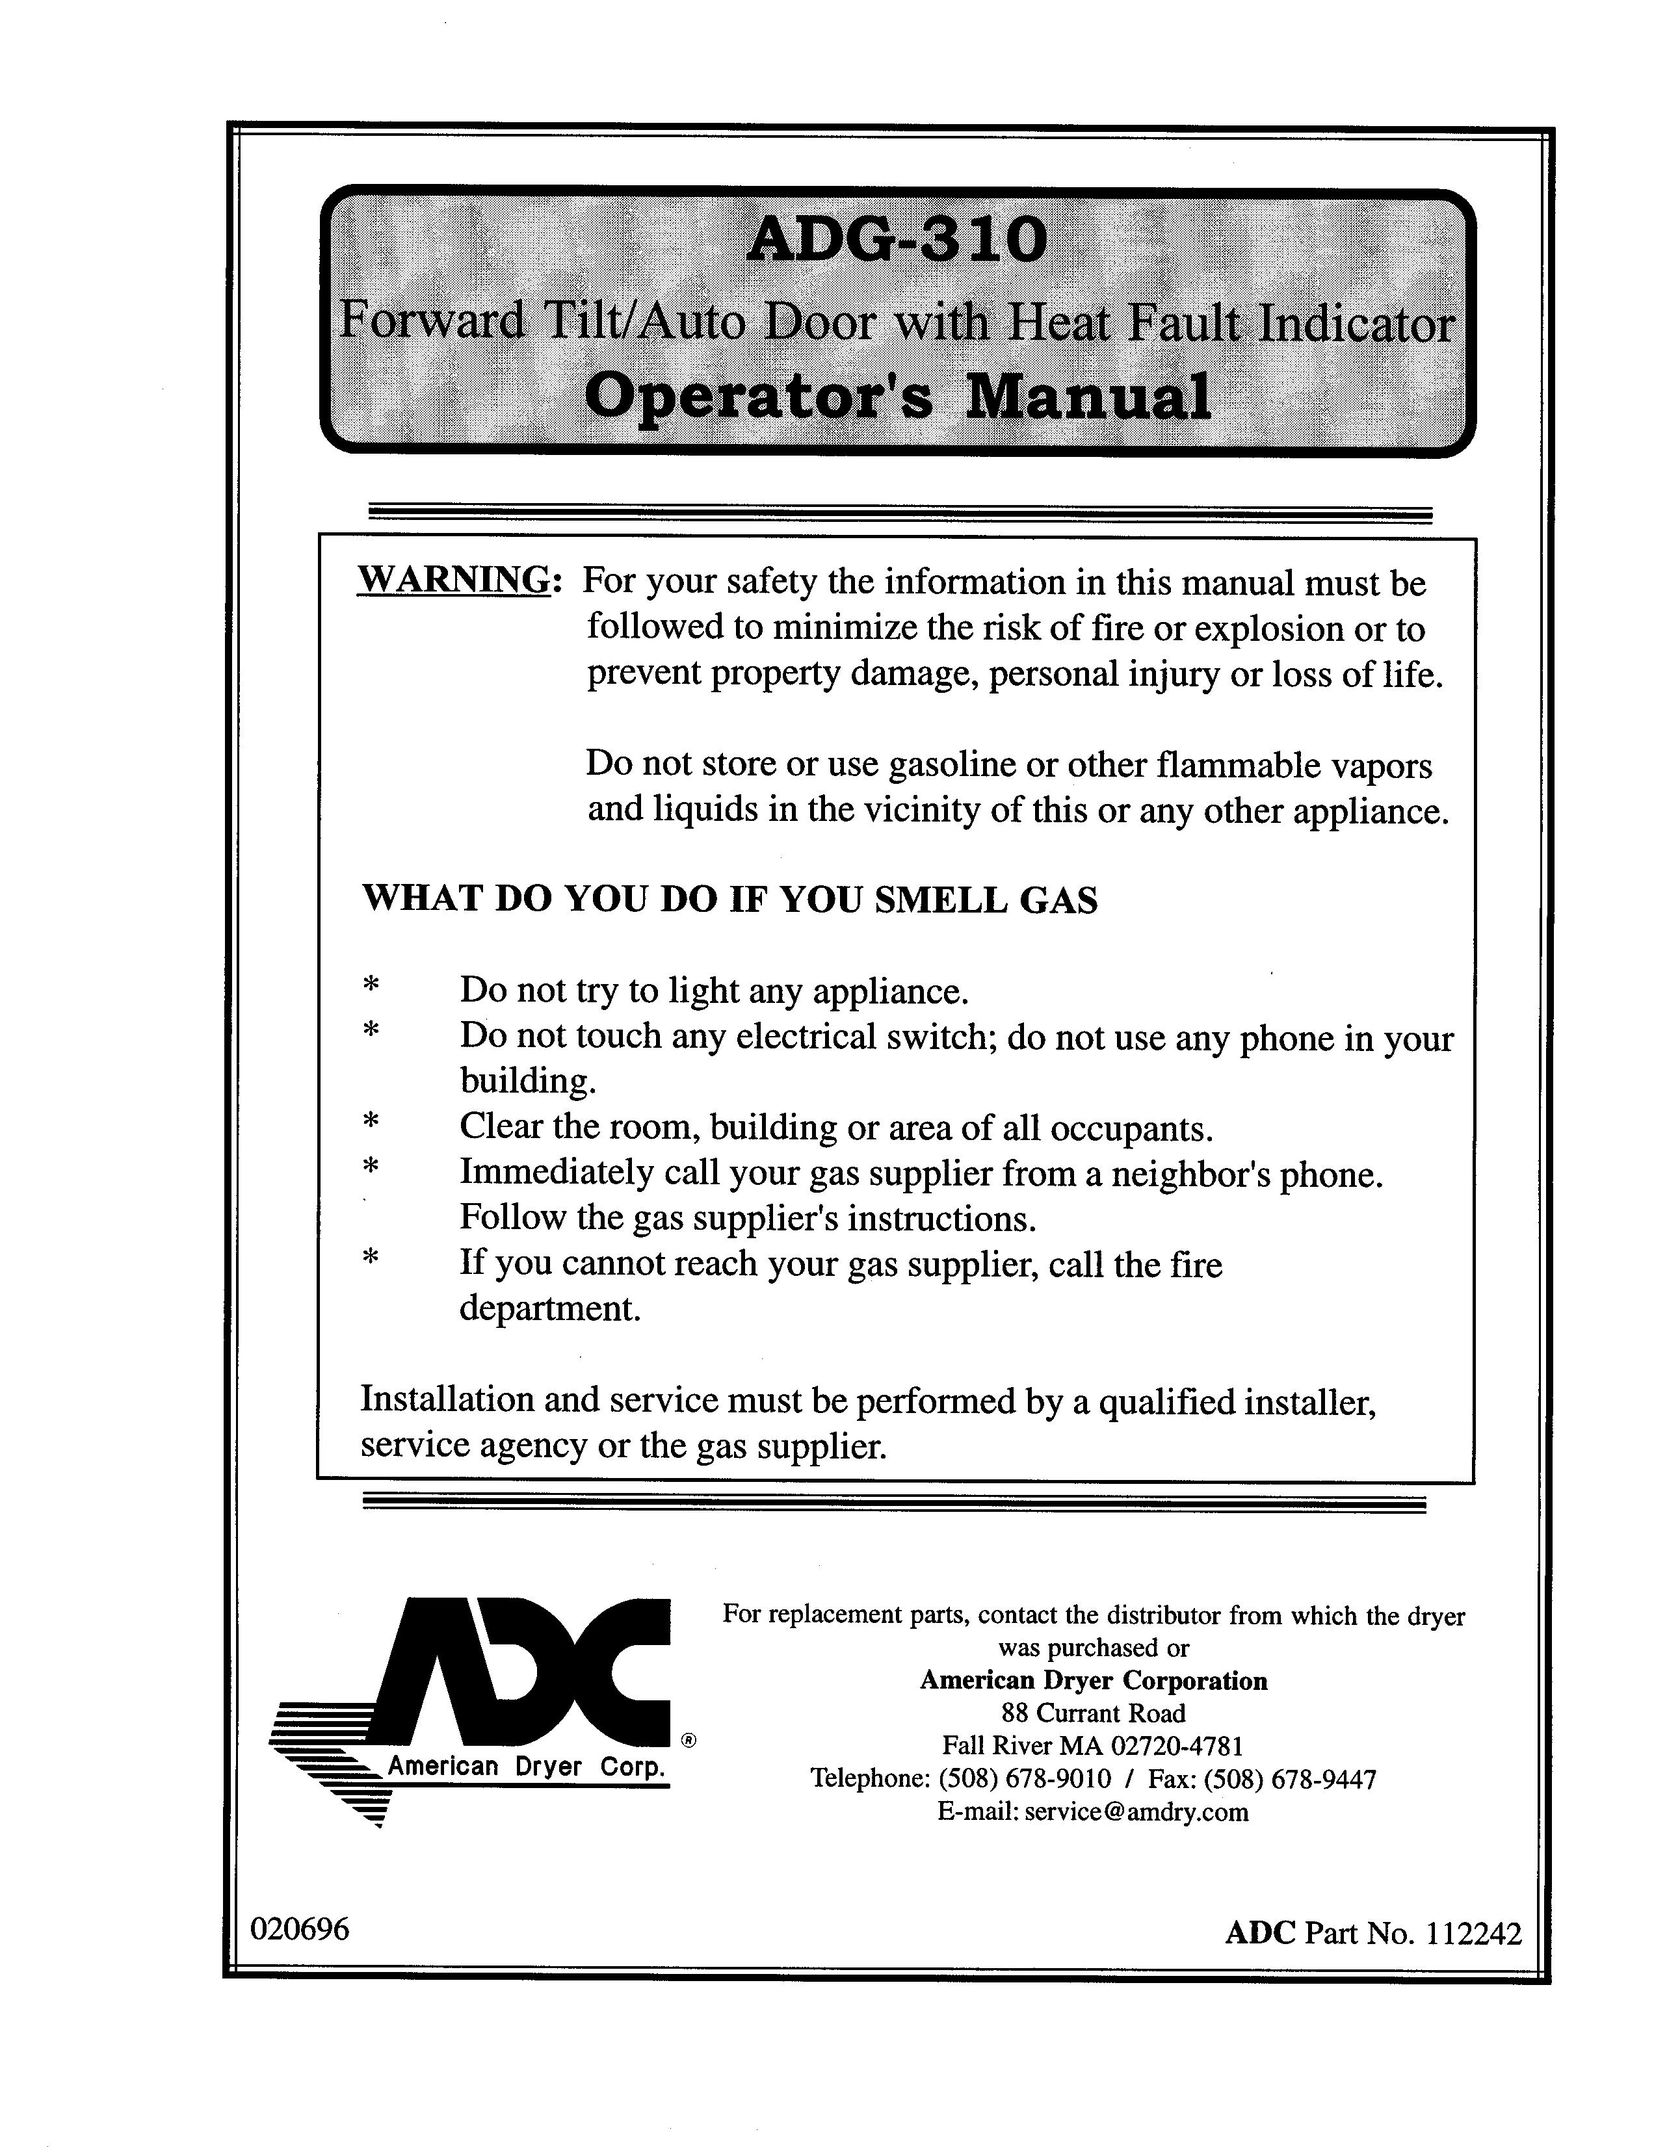 American Dryer Corp. ADG-310 Door User Manual